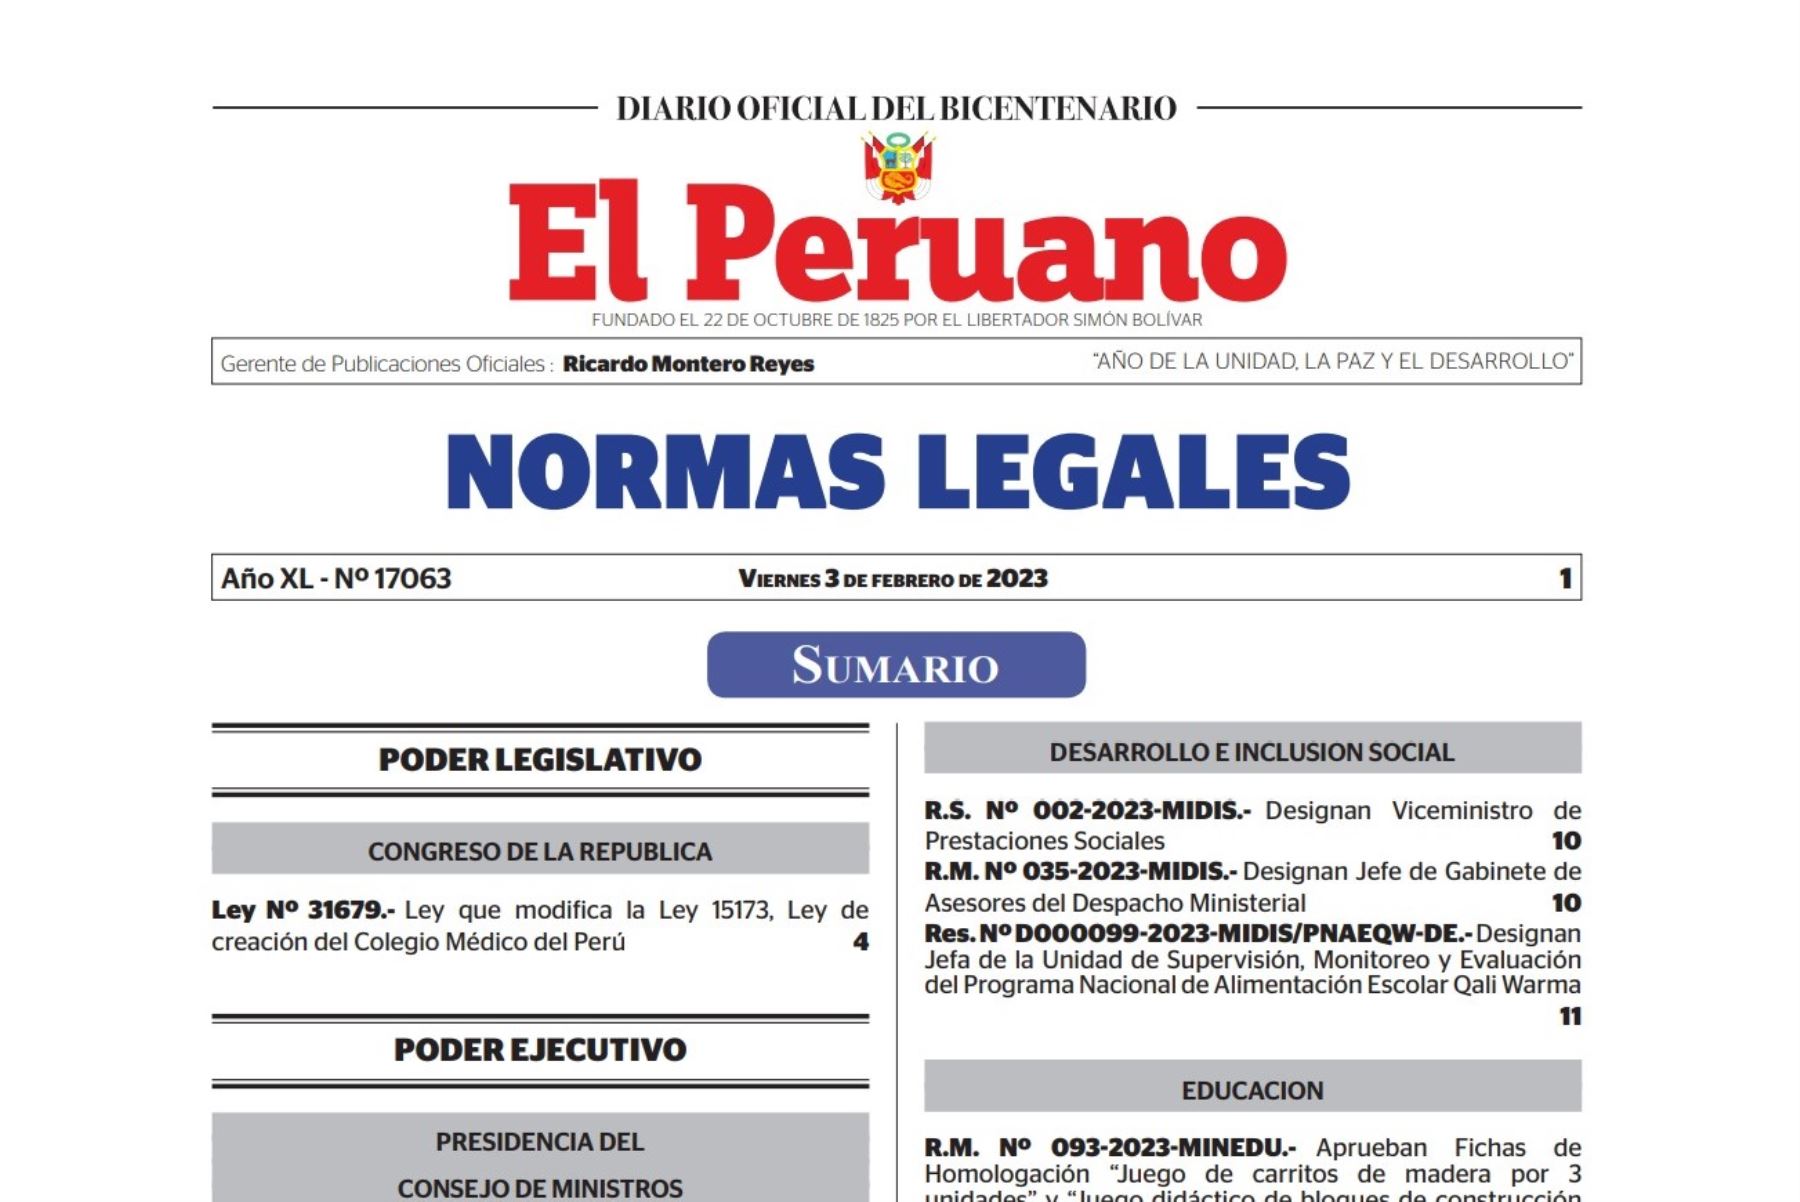 Cuadernillo de Normas Legales del Diario Oficial El Peruano. Foto: ANDINA.